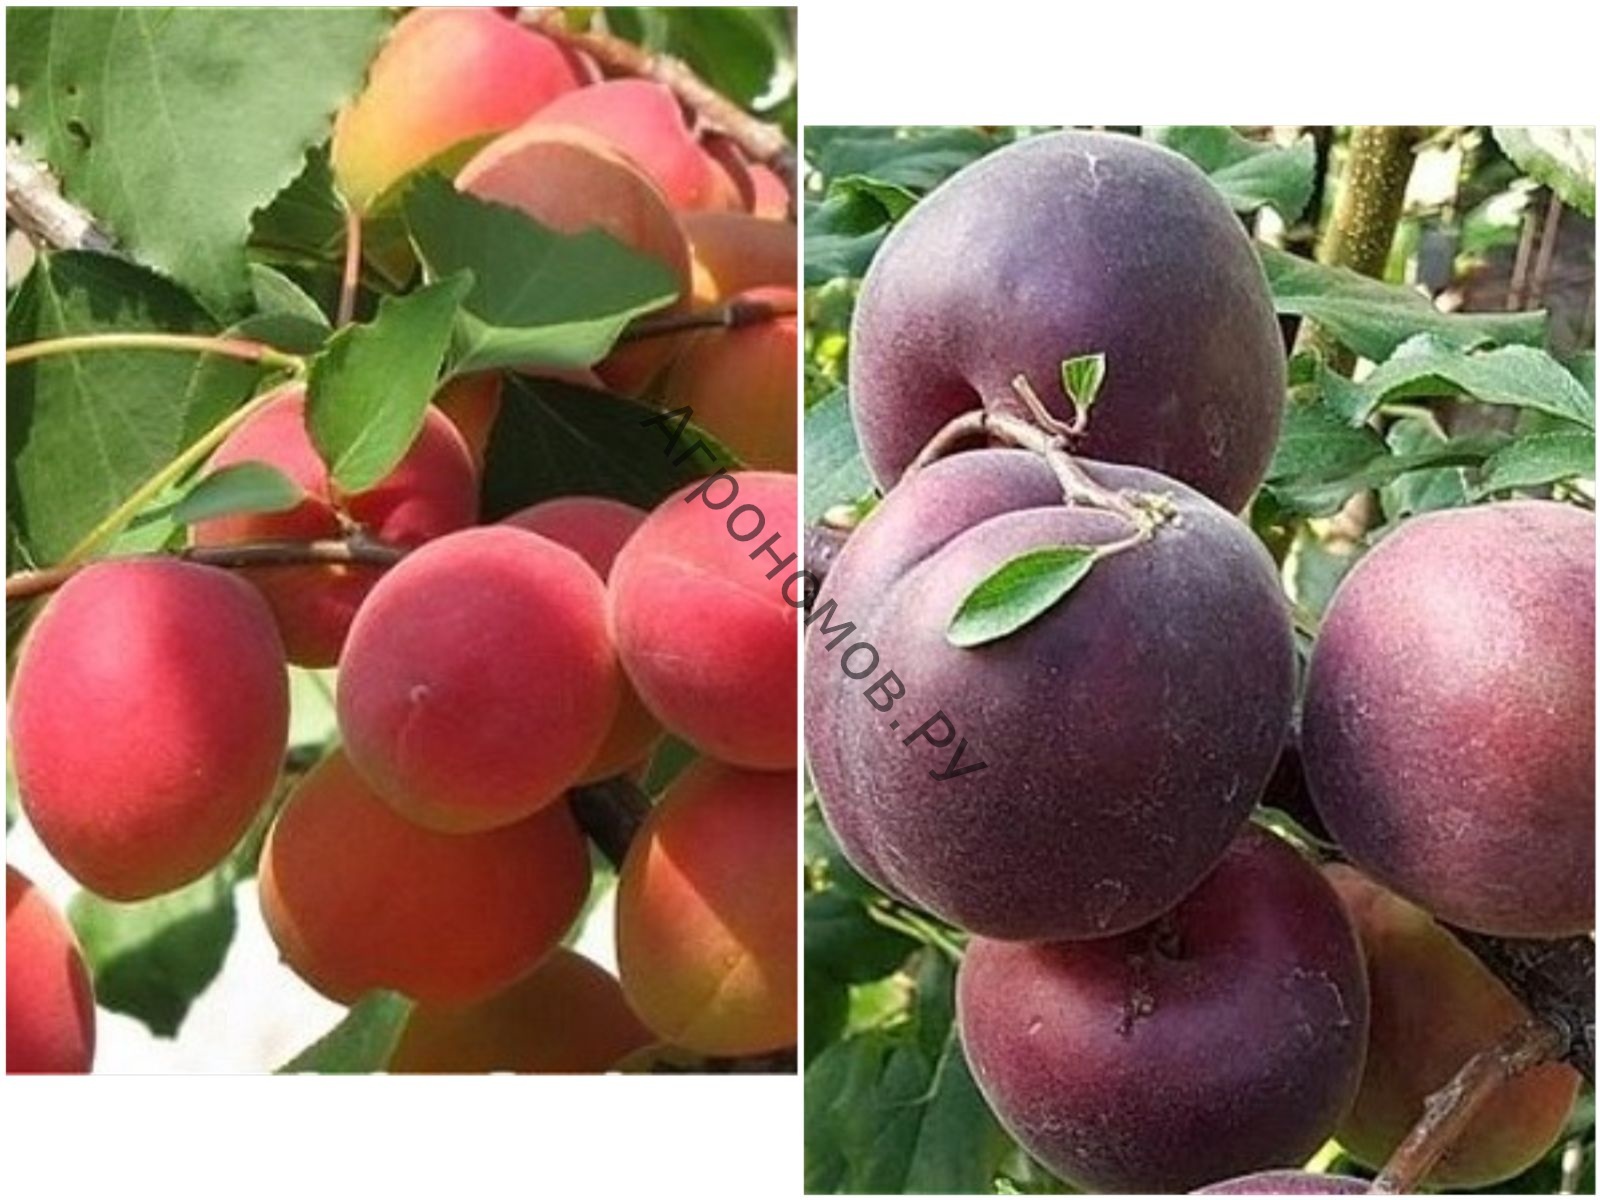  Дерево-сад (2-3 летка) абрикос 2 сорта Саратовский рубин - Черный принц - фото 1